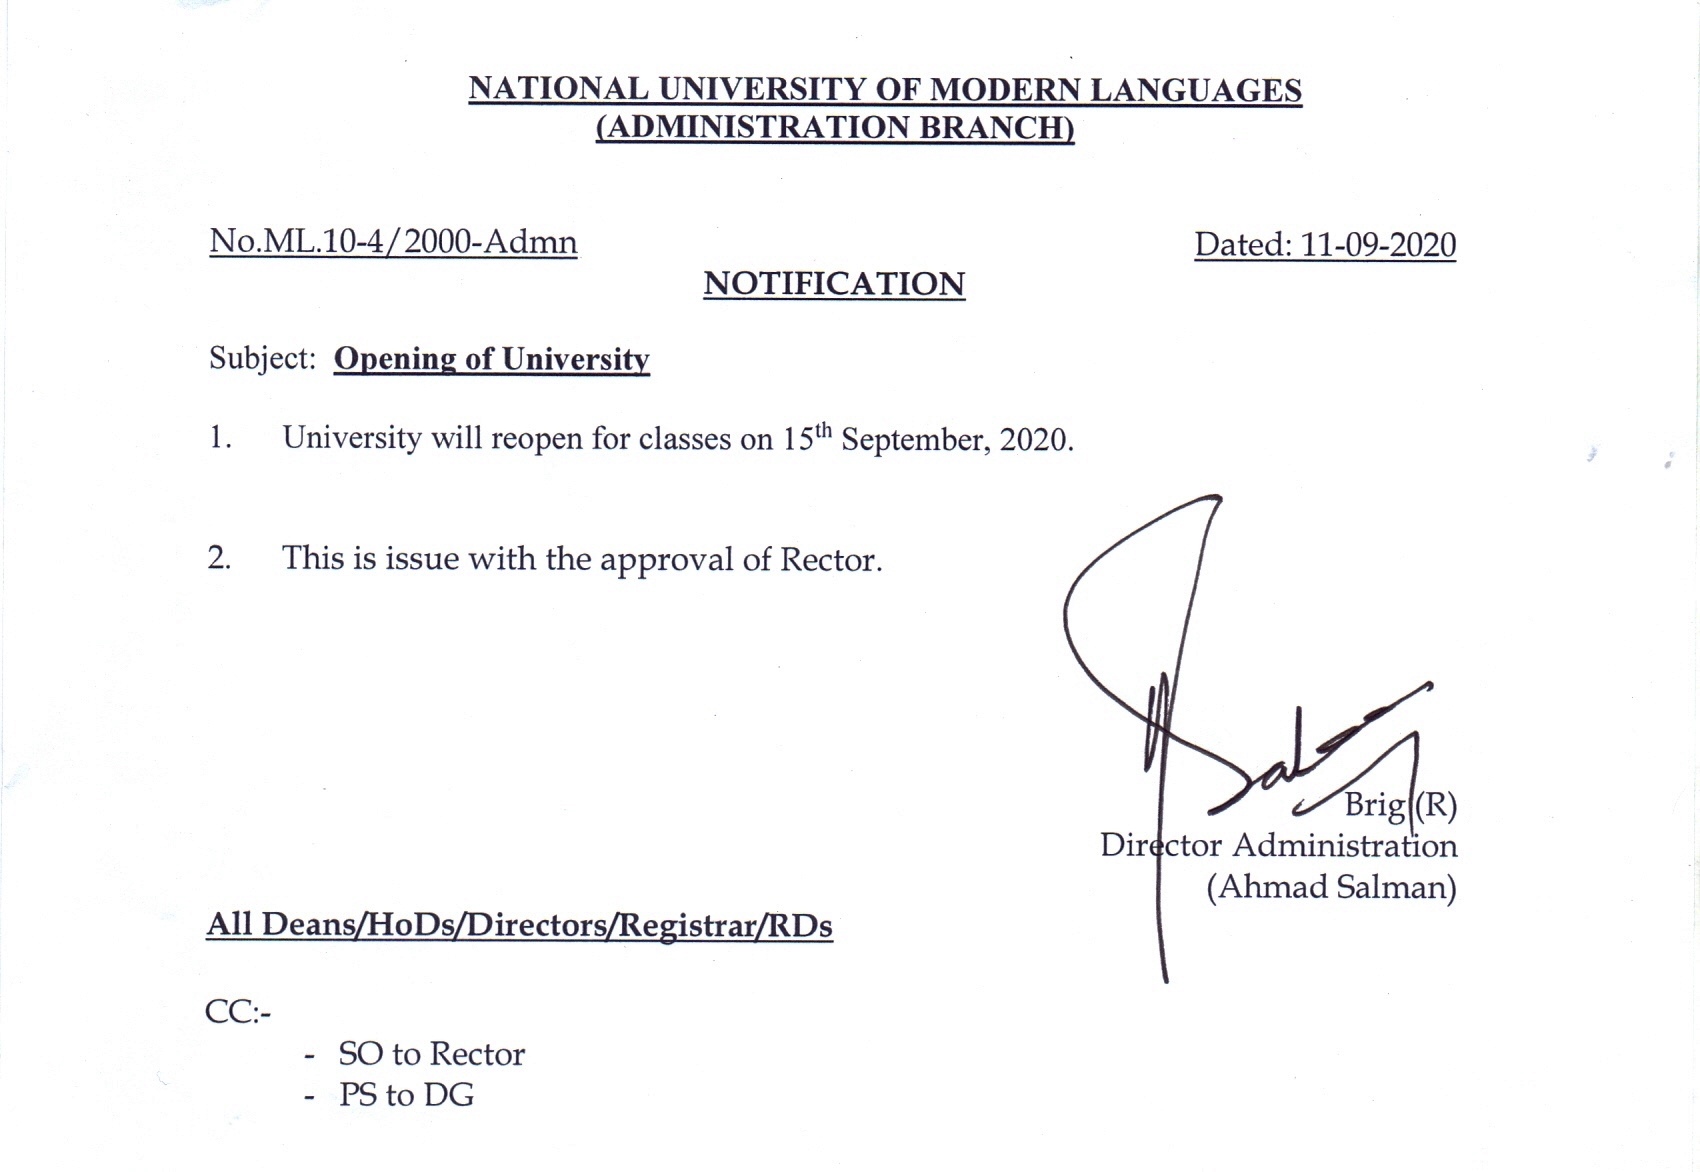 University will reopen for classes on 15th September, 2020